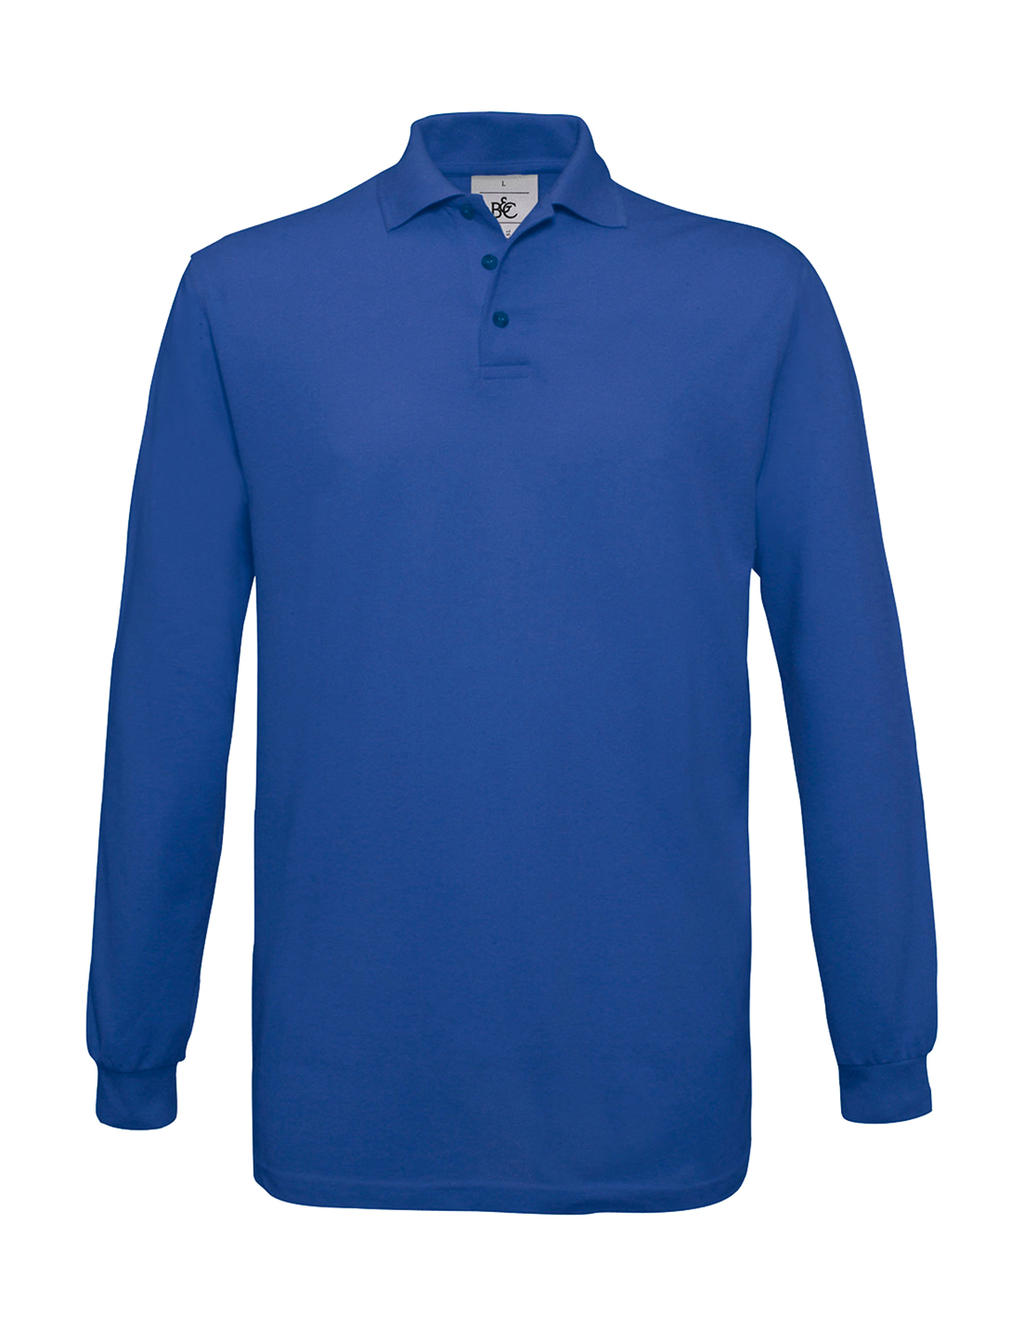 Pánské polo tričko B&C Safran s dlouhým rukávem - modré, S